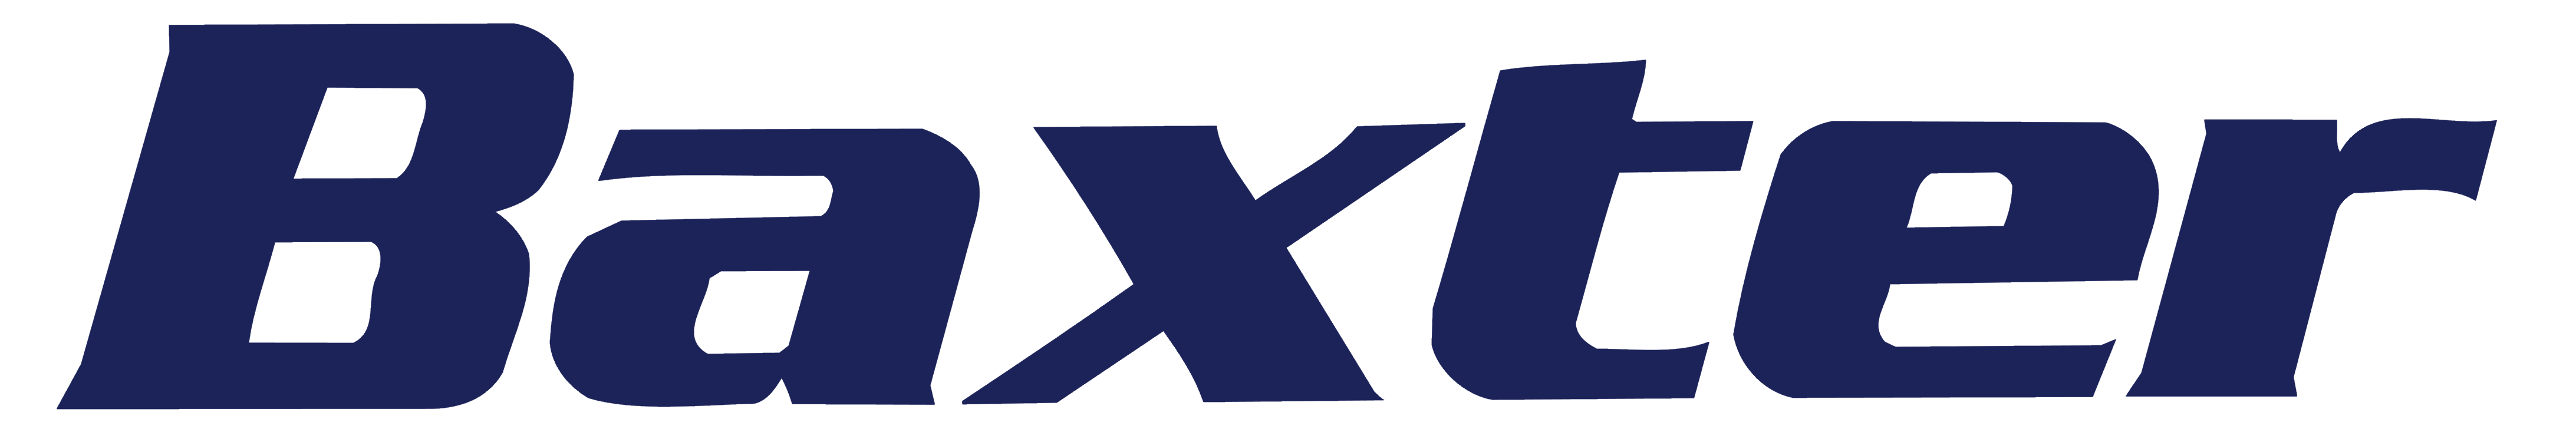 Baxter_logo_blue